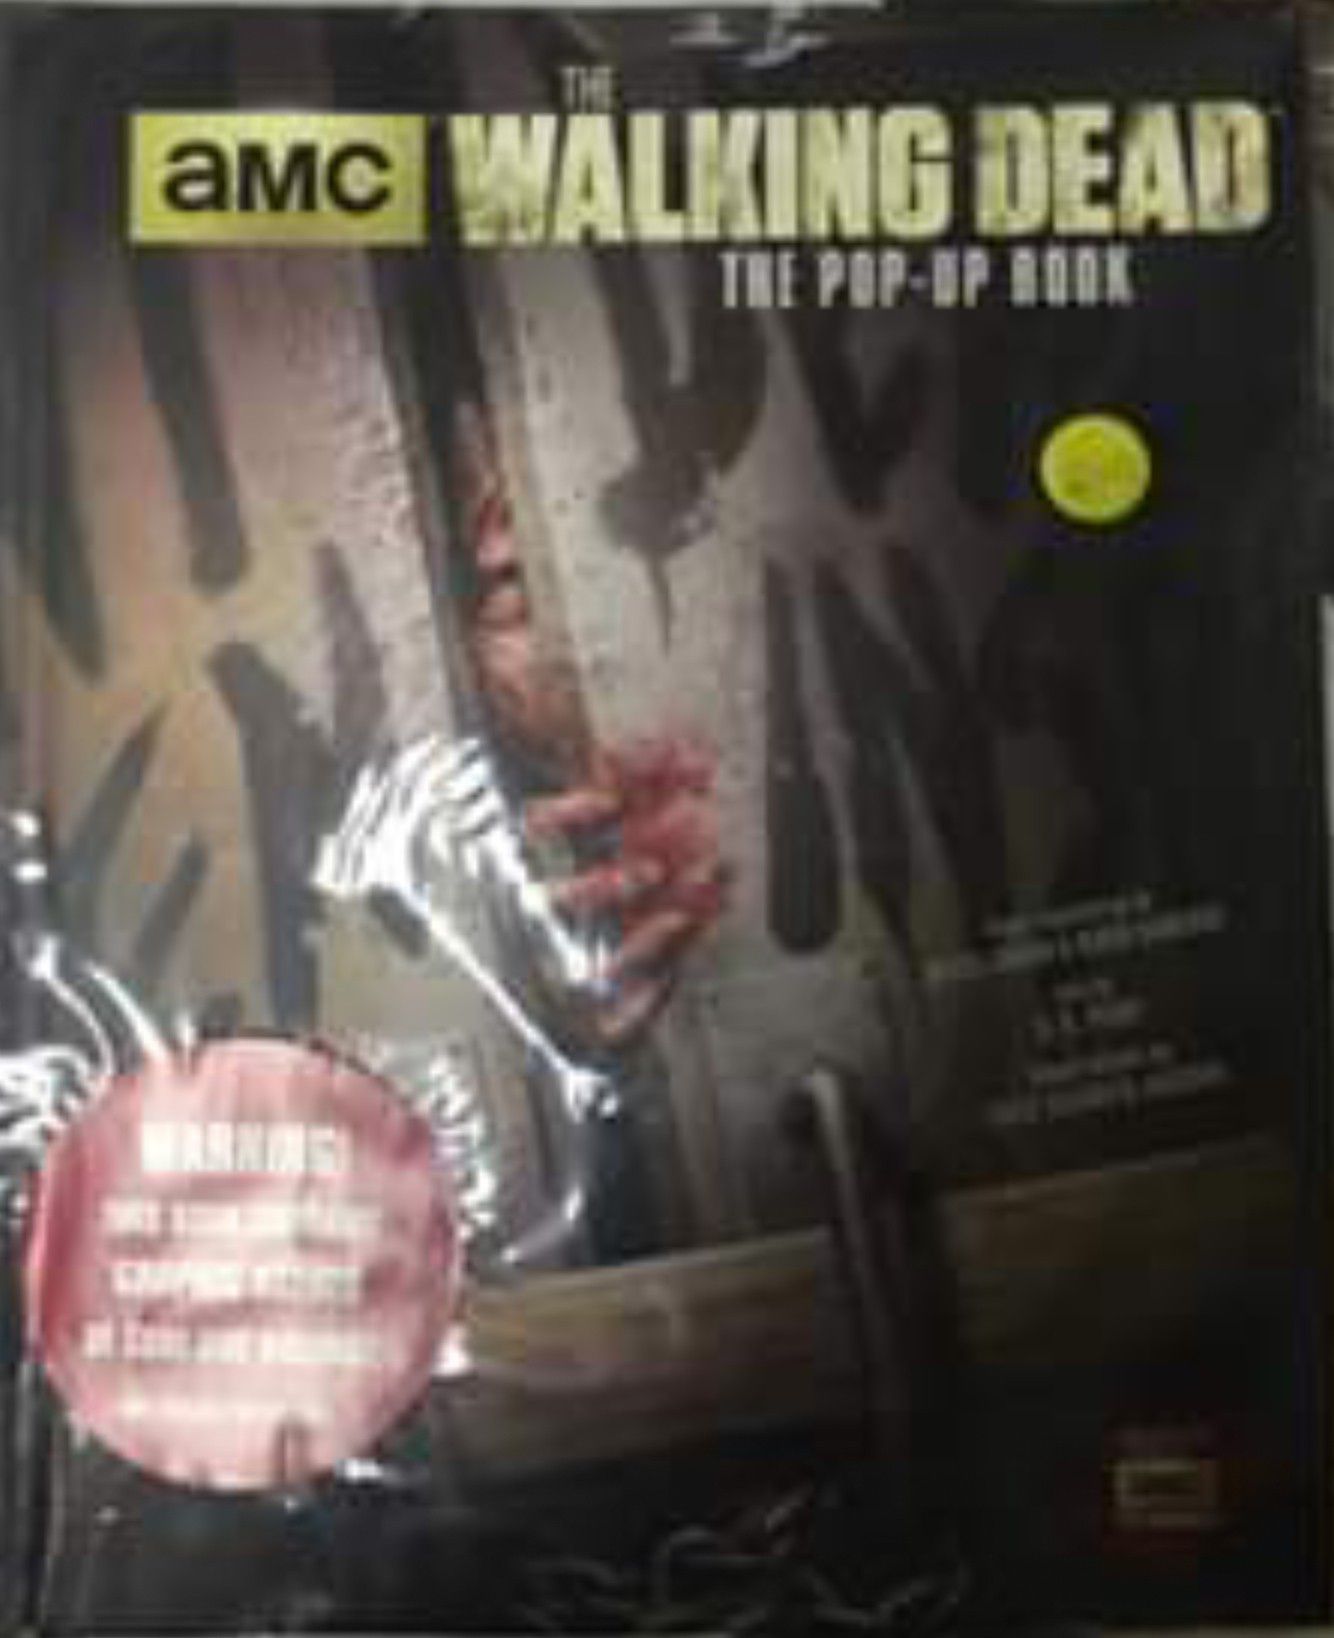 Walking Dead pop up book